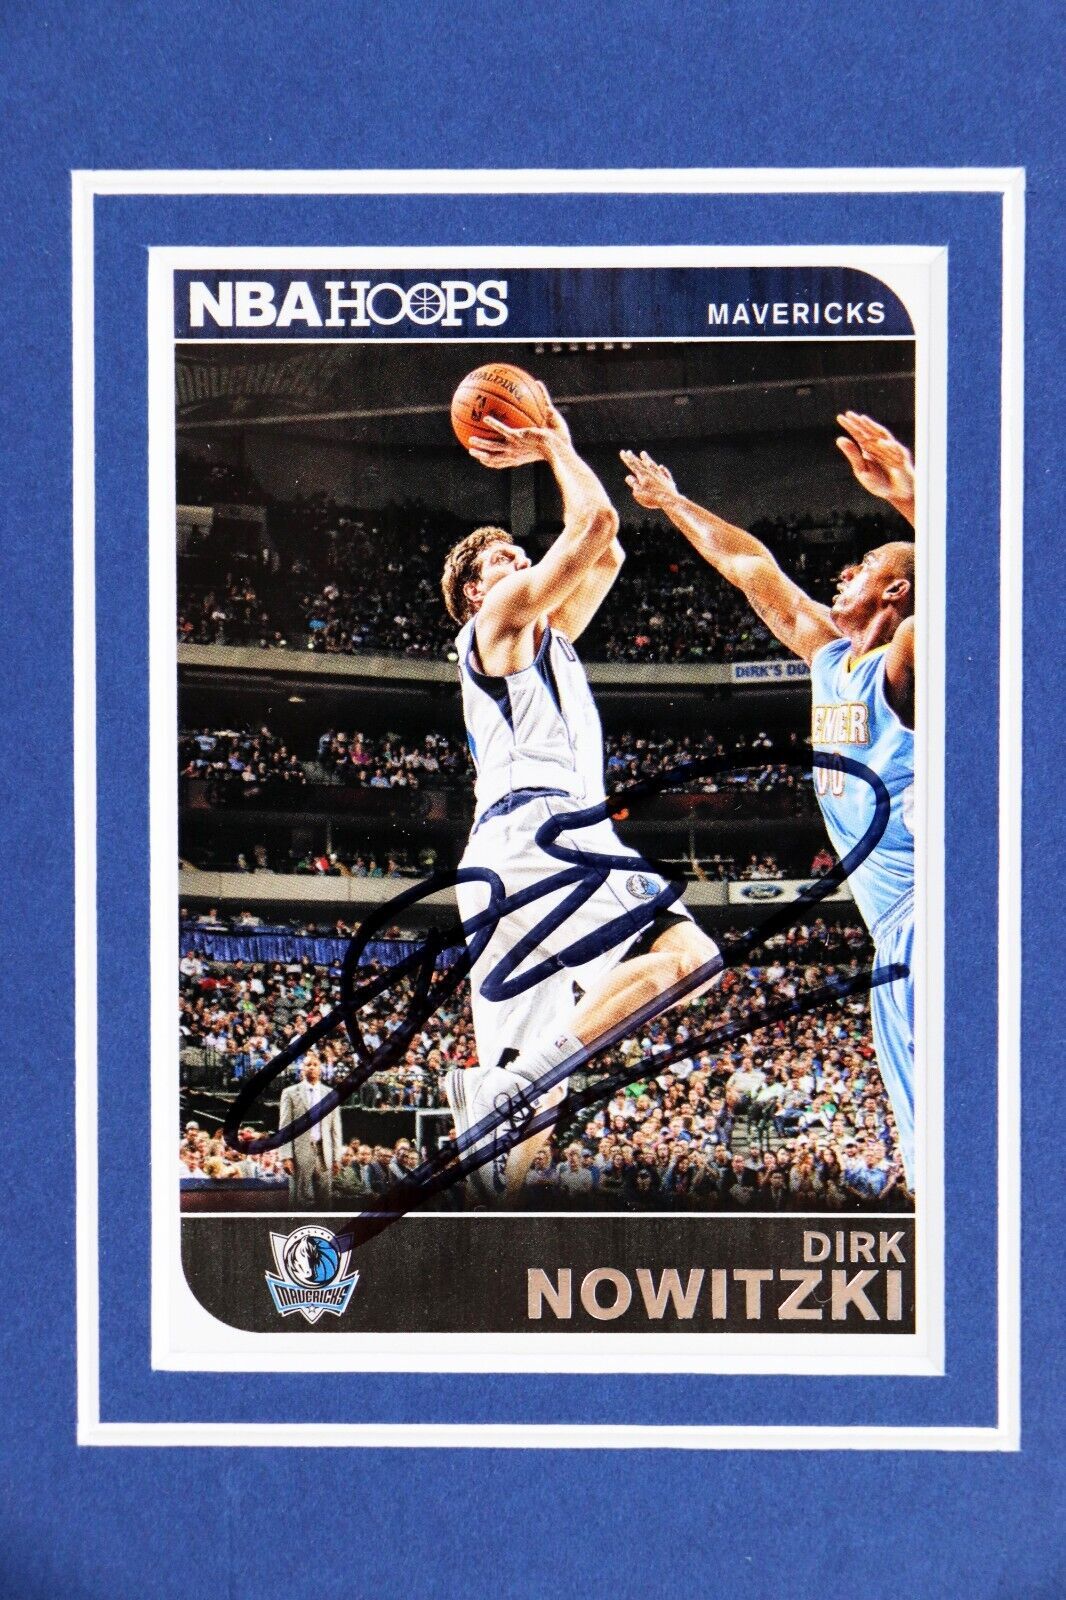 Primary image for Dirk Nowitzki Signed Framed 11x17 Photo Display JSA Mavericks